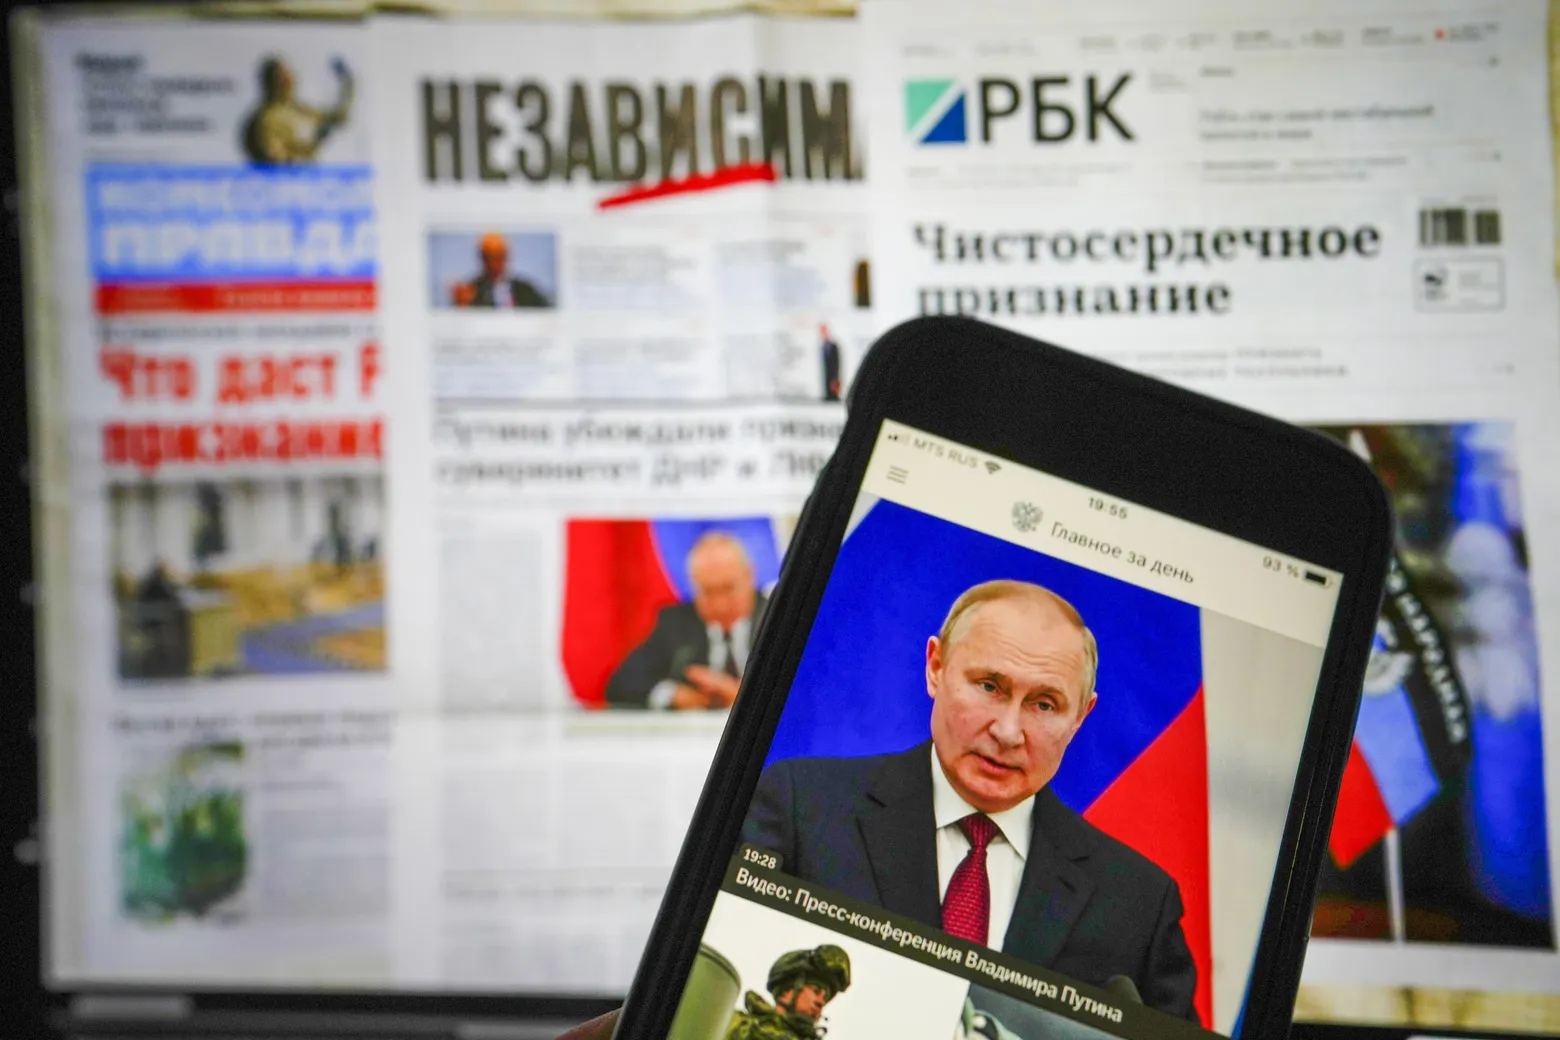 SHBA: “Kremlini i përfshirë në sulm ndaj lirisë së medias”